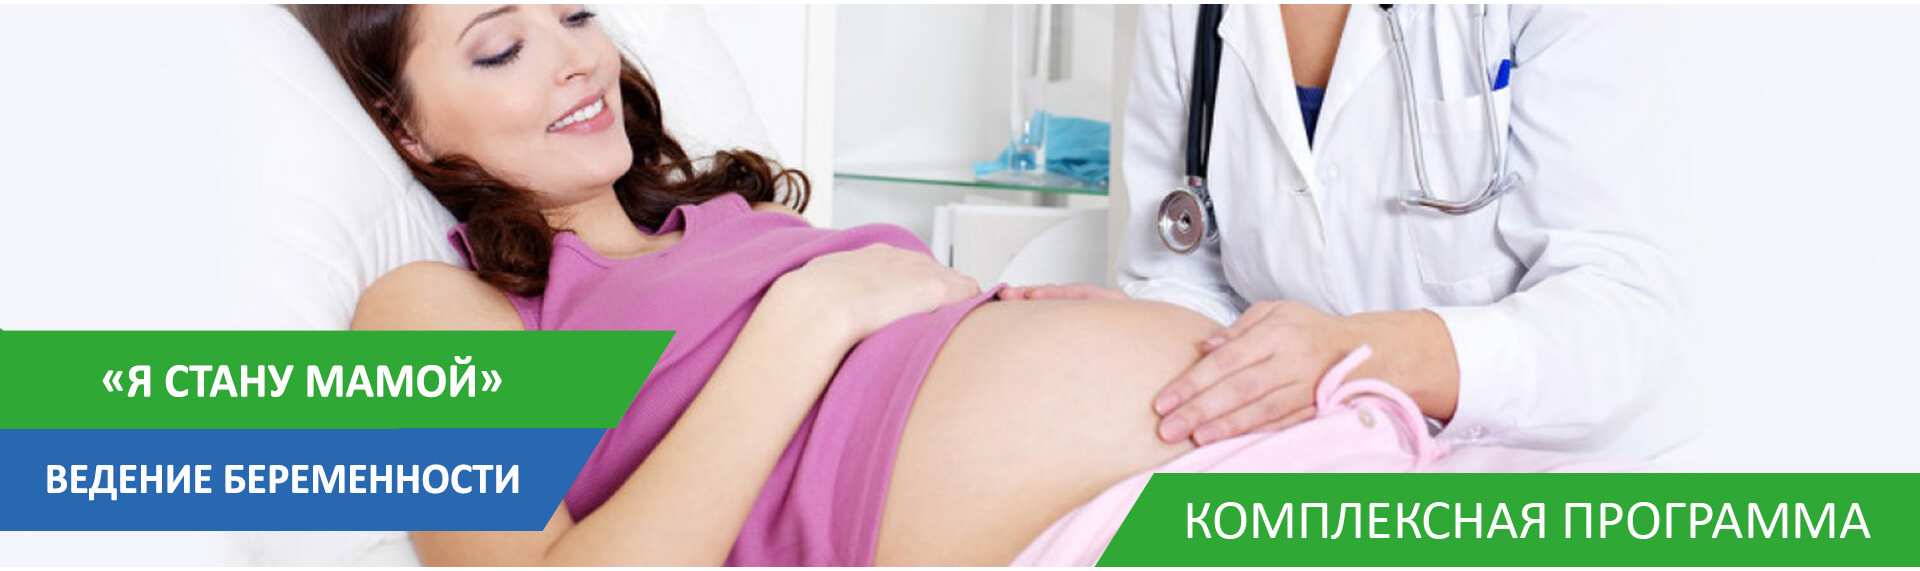 Ведение беременности самара. Ведение беременности реклама. Ведение беременности Челябинск. Ведение беременности Липецк.